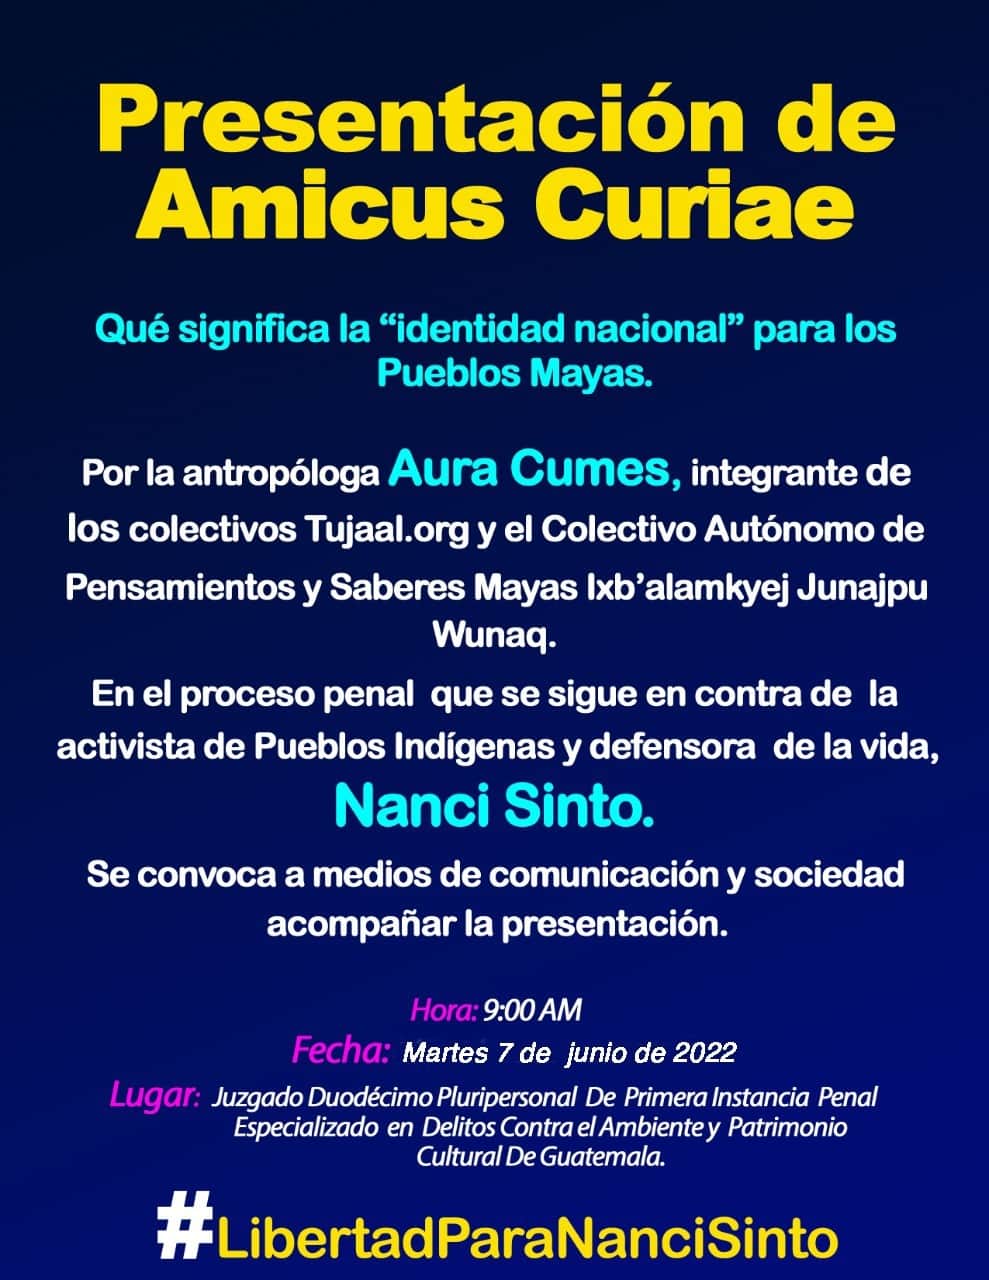 Amicus curiae: Qué significa la “identidad nacional” para los Pueblos Mayas.